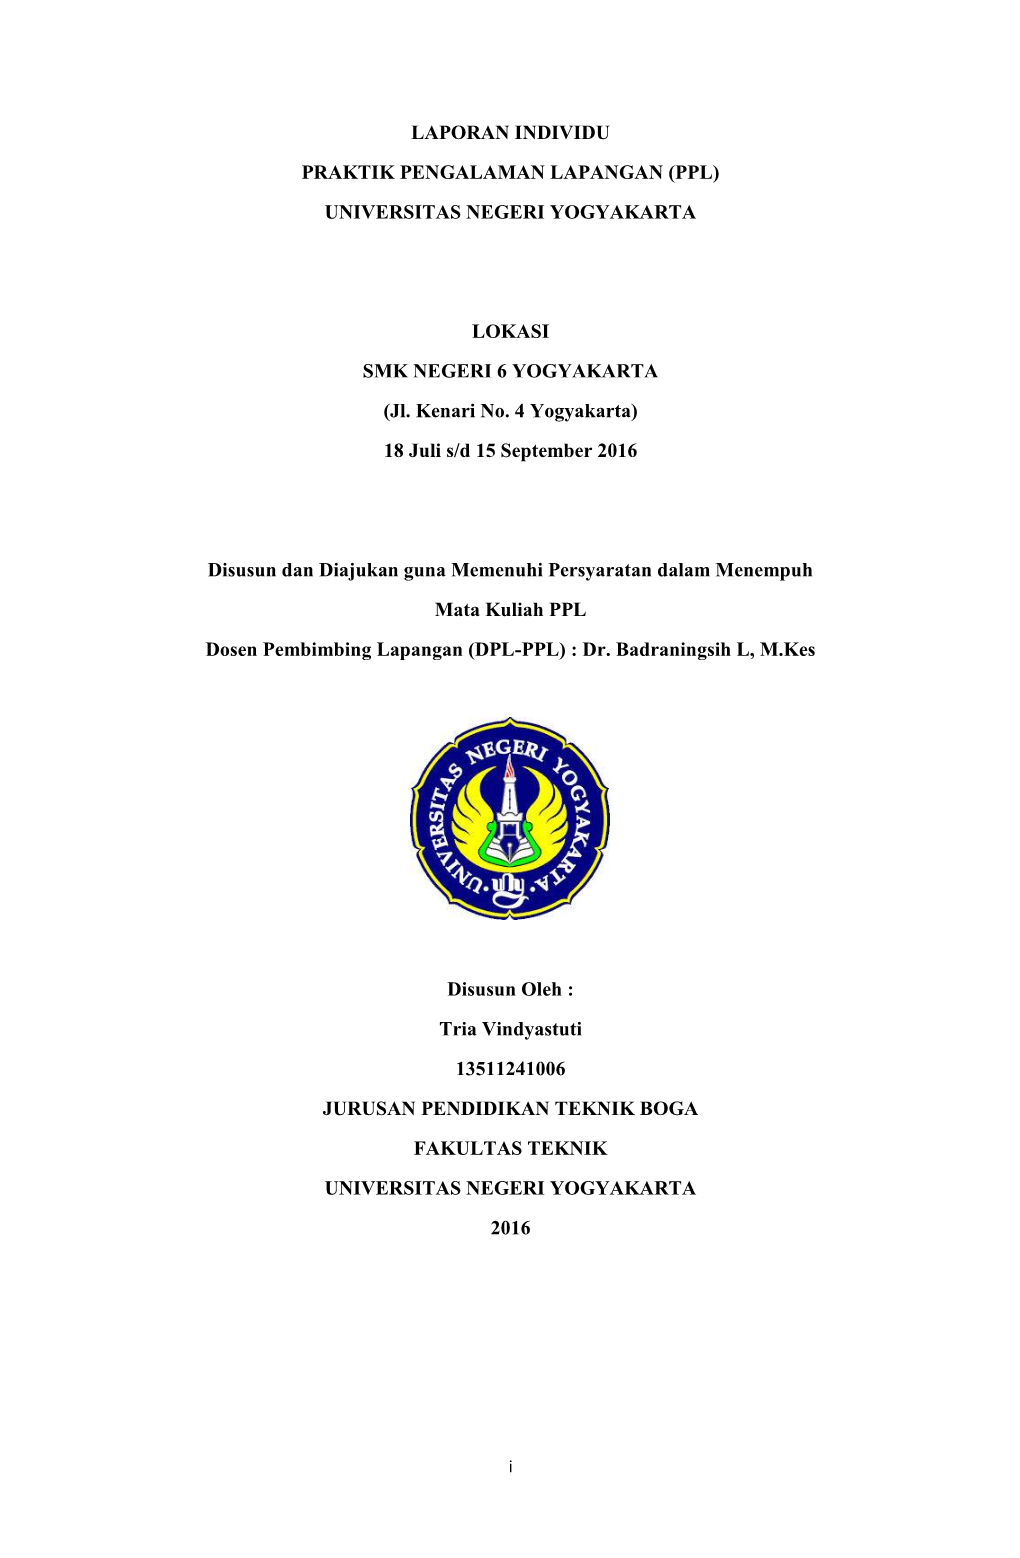 Laporan Individu Praktik Pengalaman Lapangan (Ppl) Universitas Negeri Yogyakarta